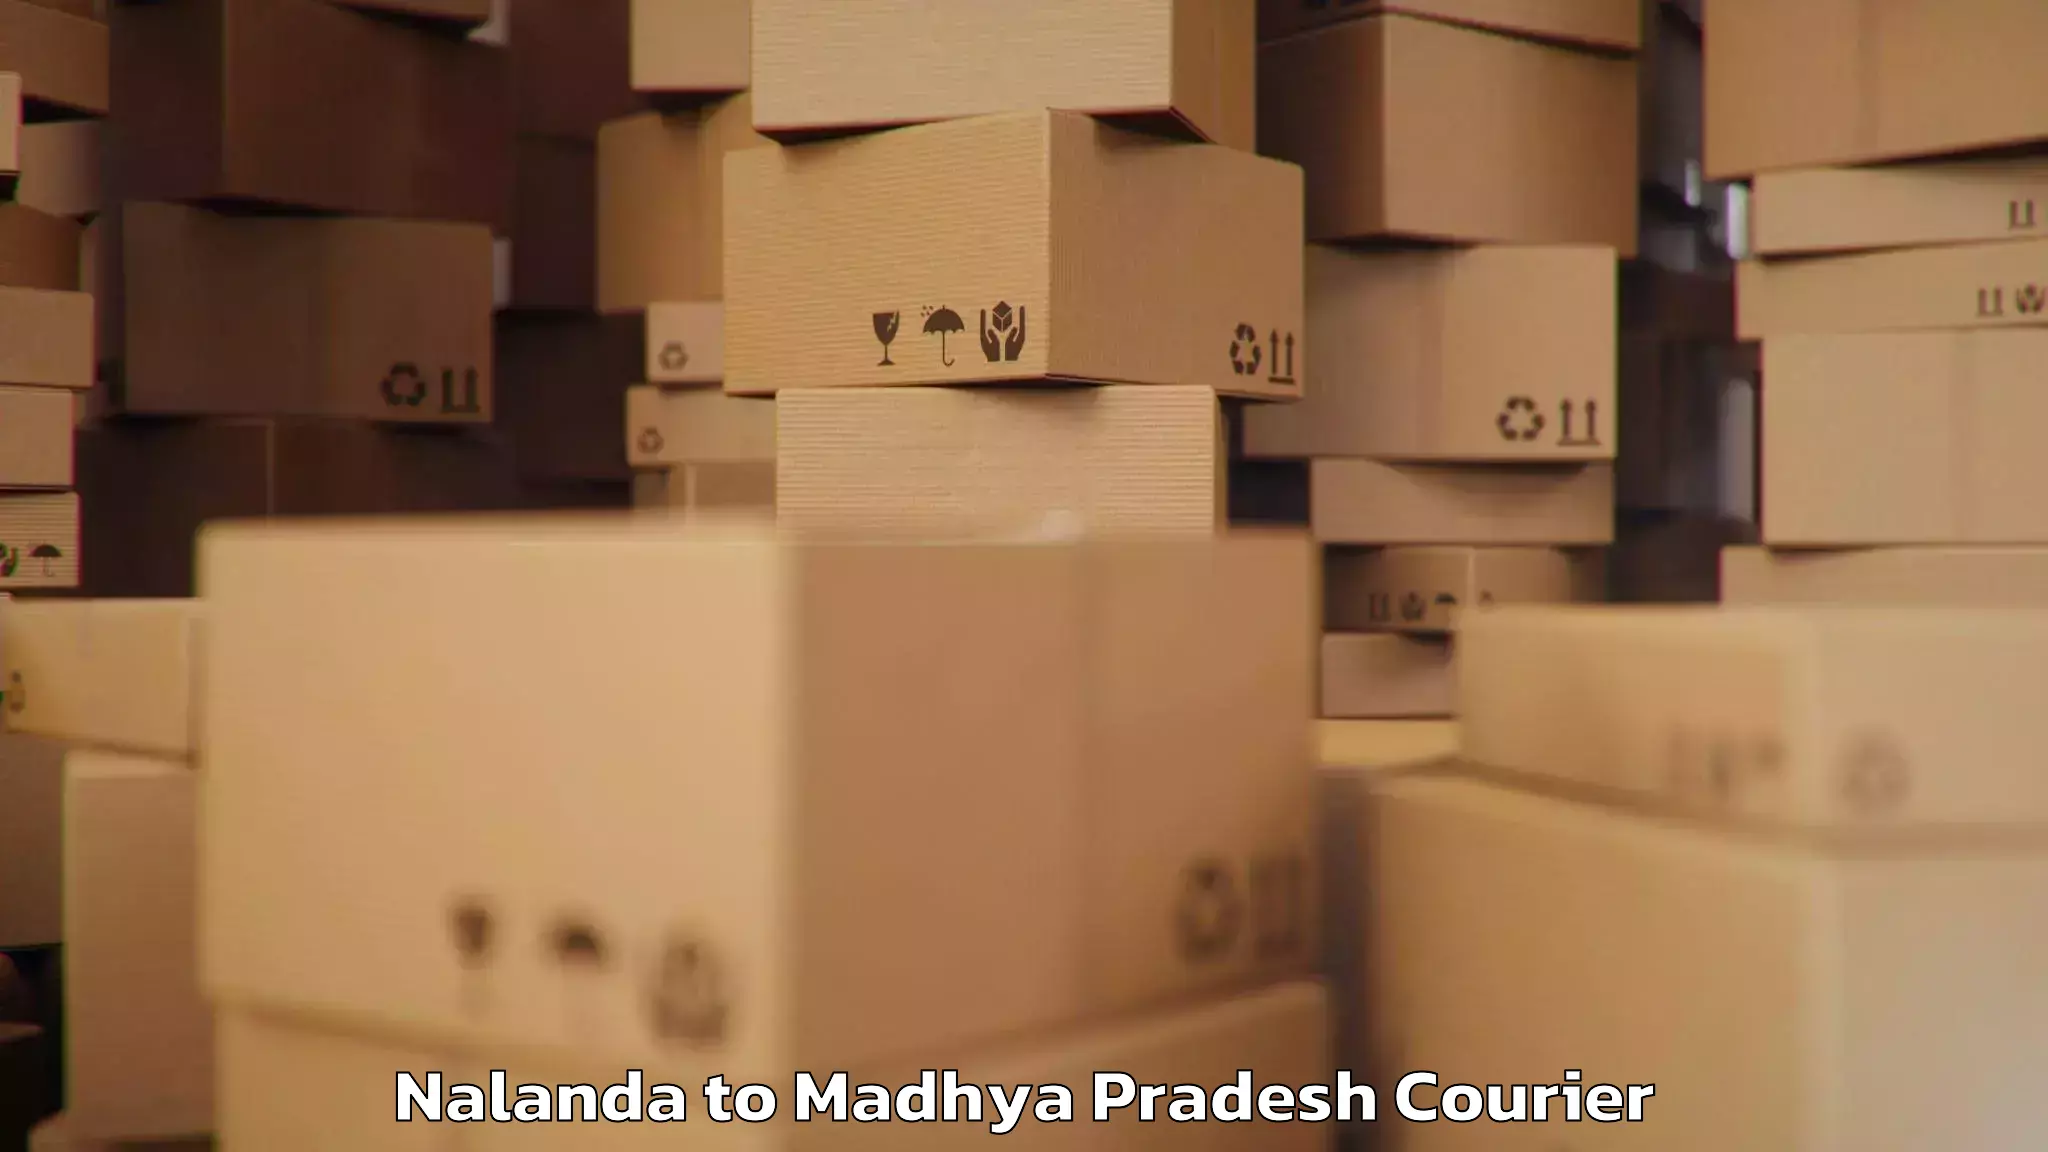 Luggage transport consultancy Nalanda to Sitamau